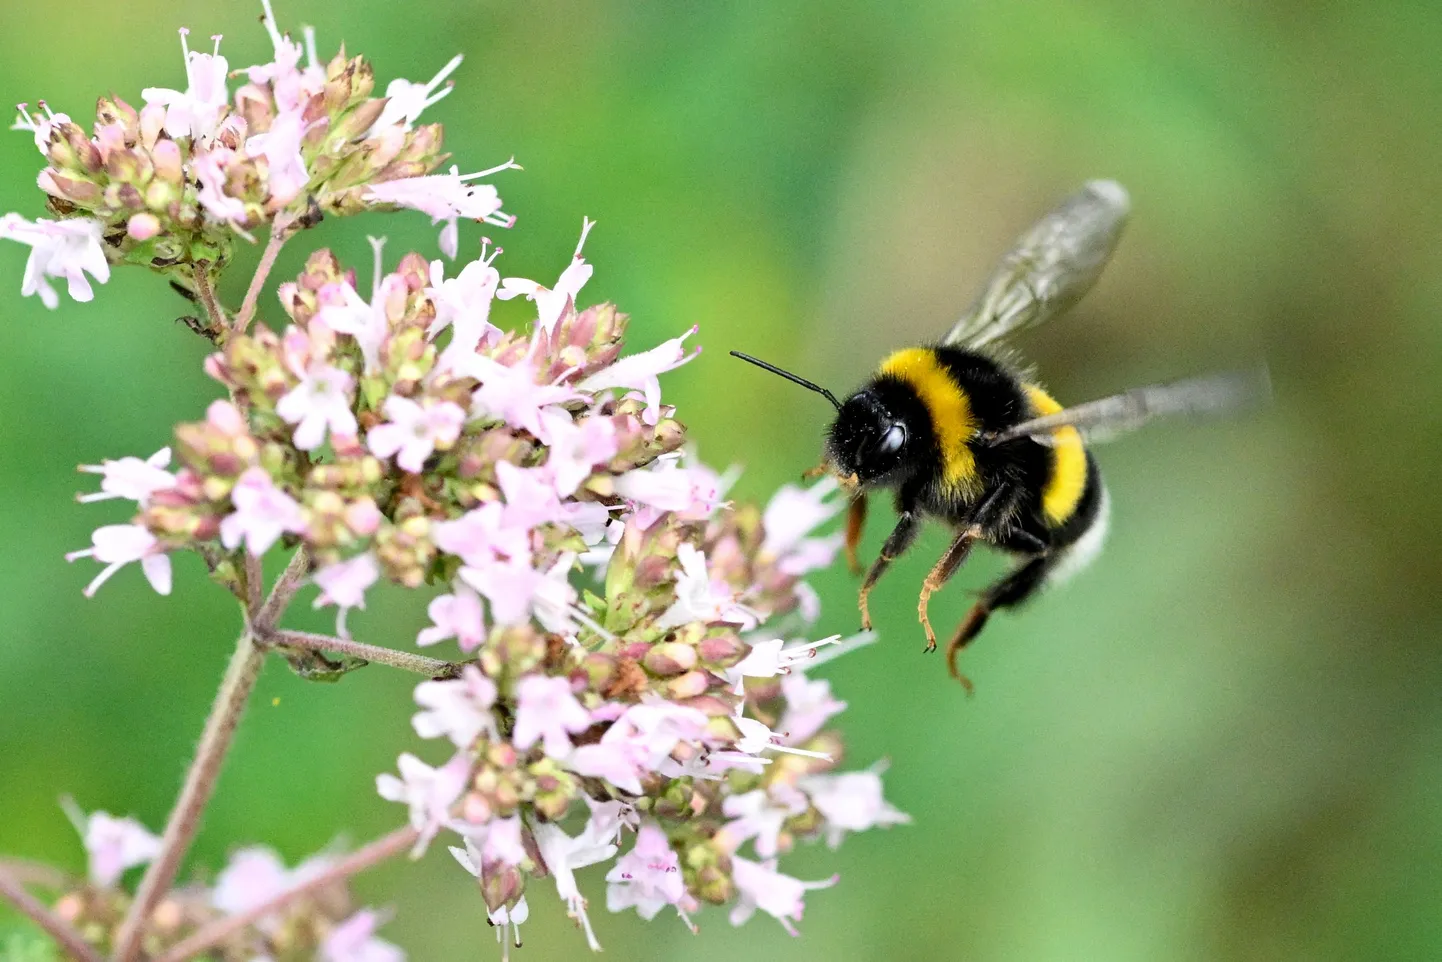 Miks on istandustel vaja Hollandist pärit kimalaste abi? Vastus on lihtne: mesilane kehva ilmaga ei lenda, kimalased aga lendavad ja teevad tööd iga ilmaga.